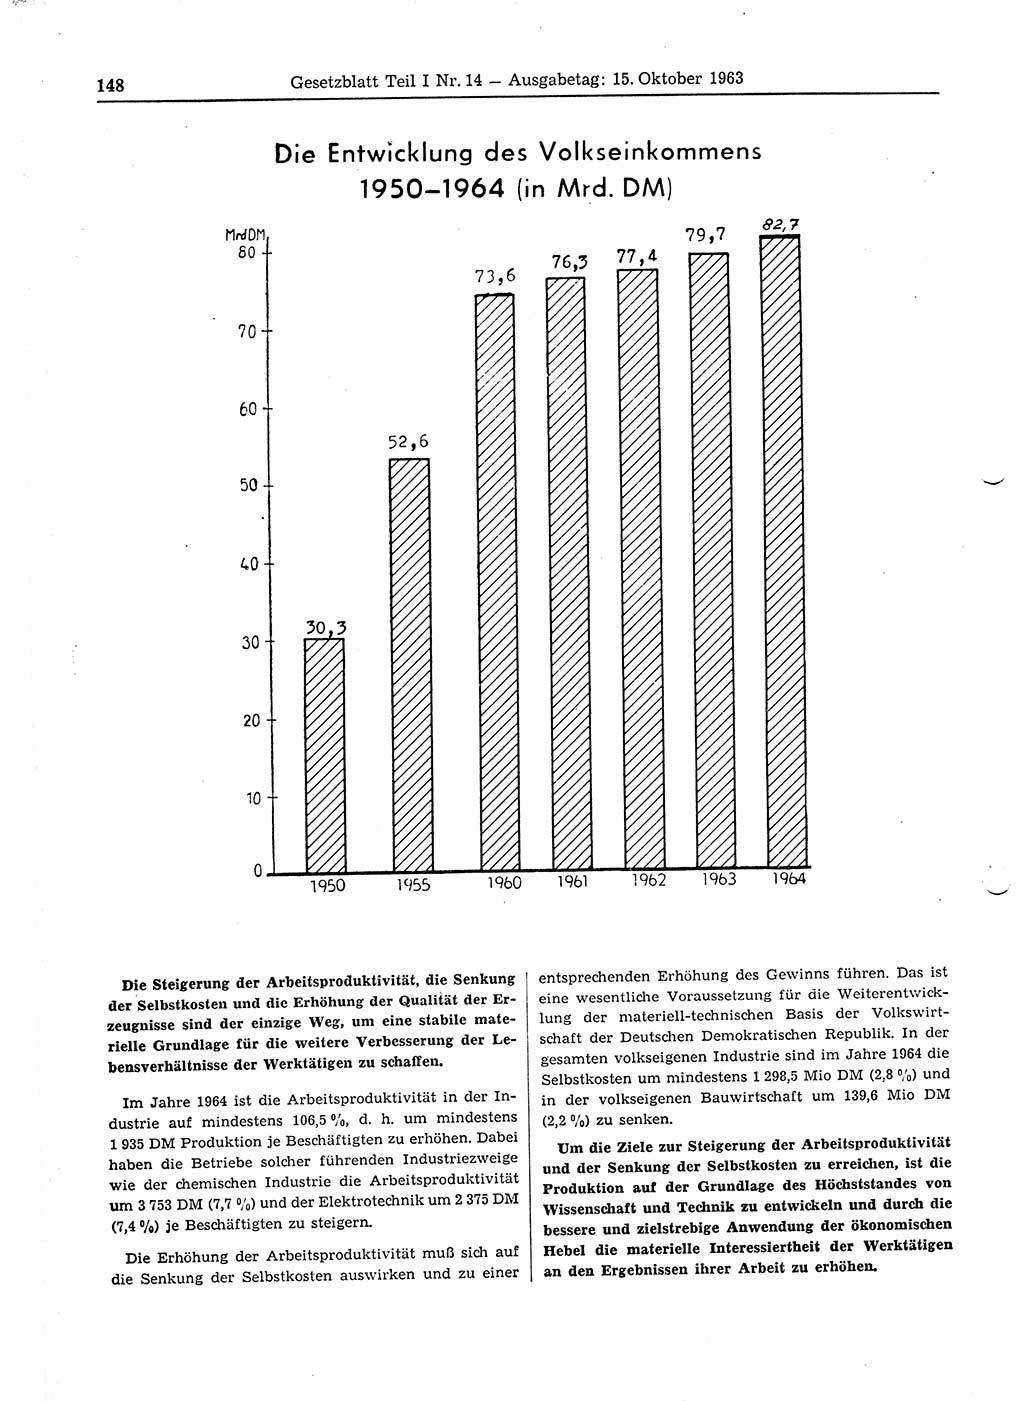 Gesetzblatt (GBl.) der Deutschen Demokratischen Republik (DDR) Teil Ⅰ 1963, Seite 148 (GBl. DDR Ⅰ 1963, S. 148)